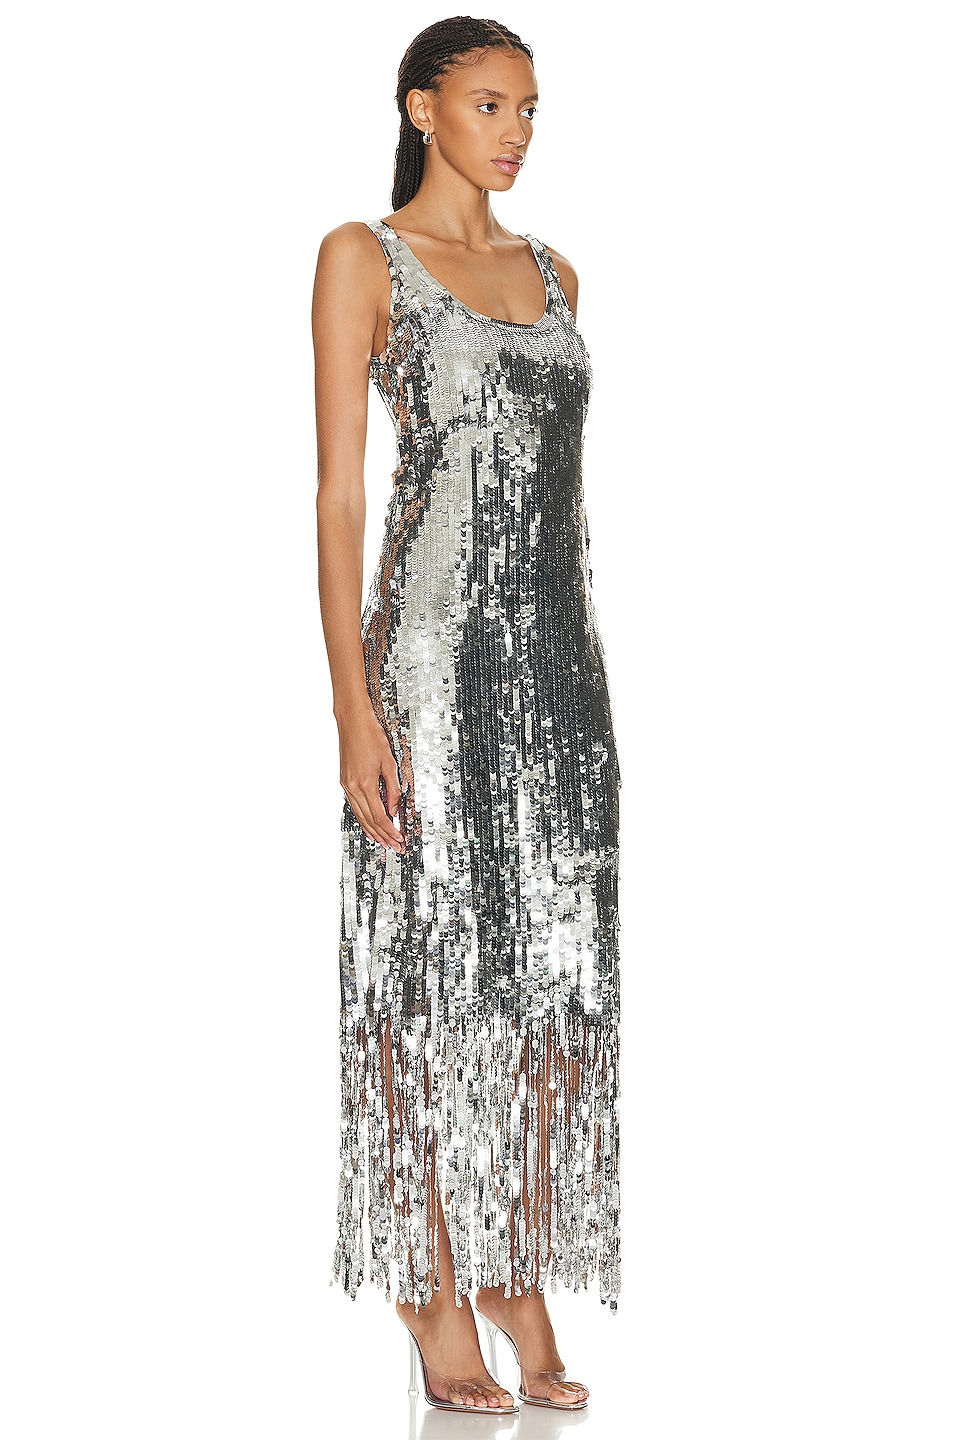 SIMKHAI Ayala Gown in Silver | FWRD